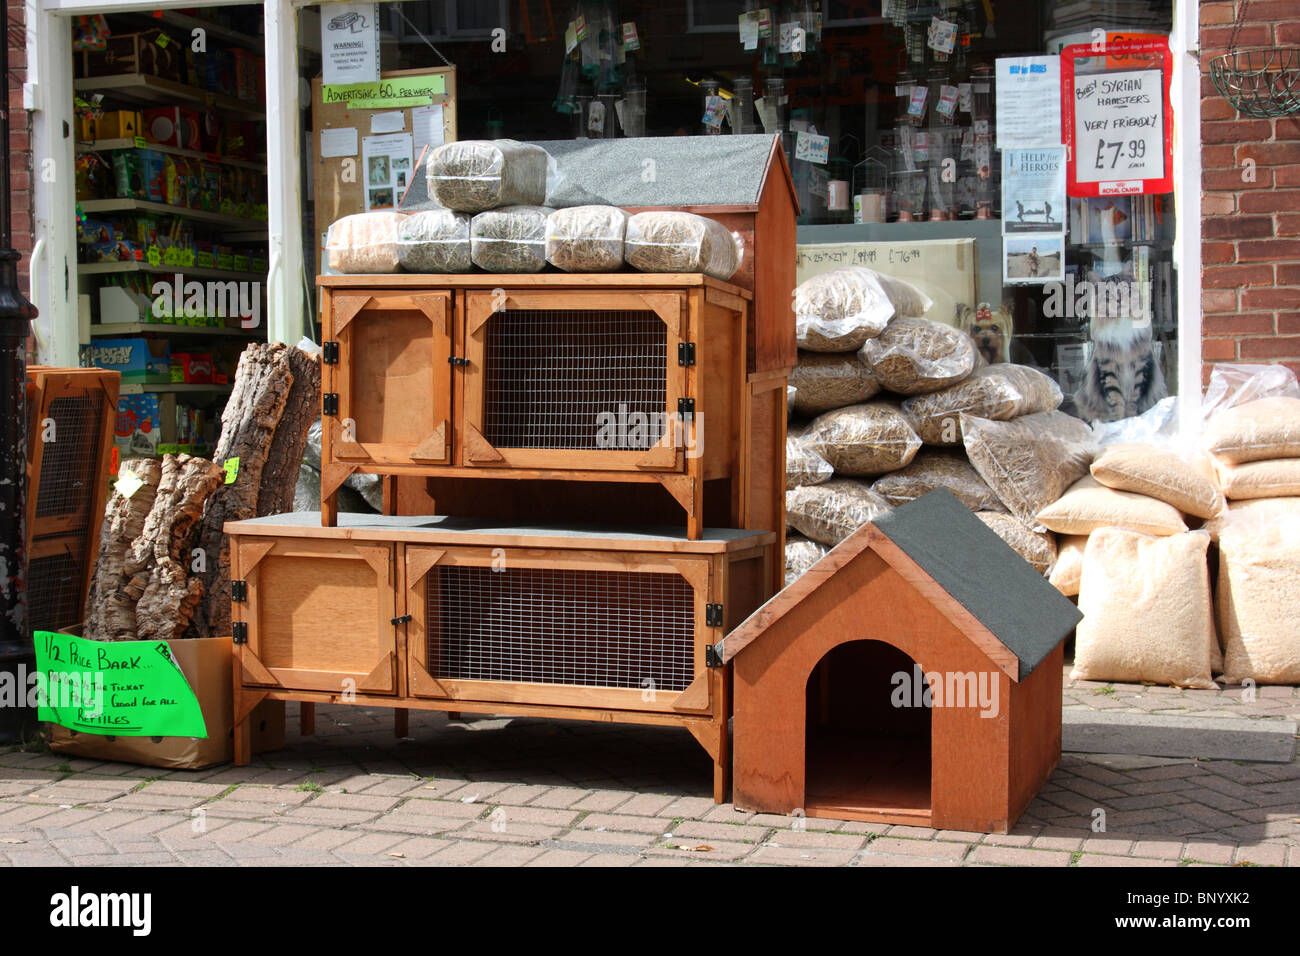 A pet shop in a U.K. town. Stock Photo